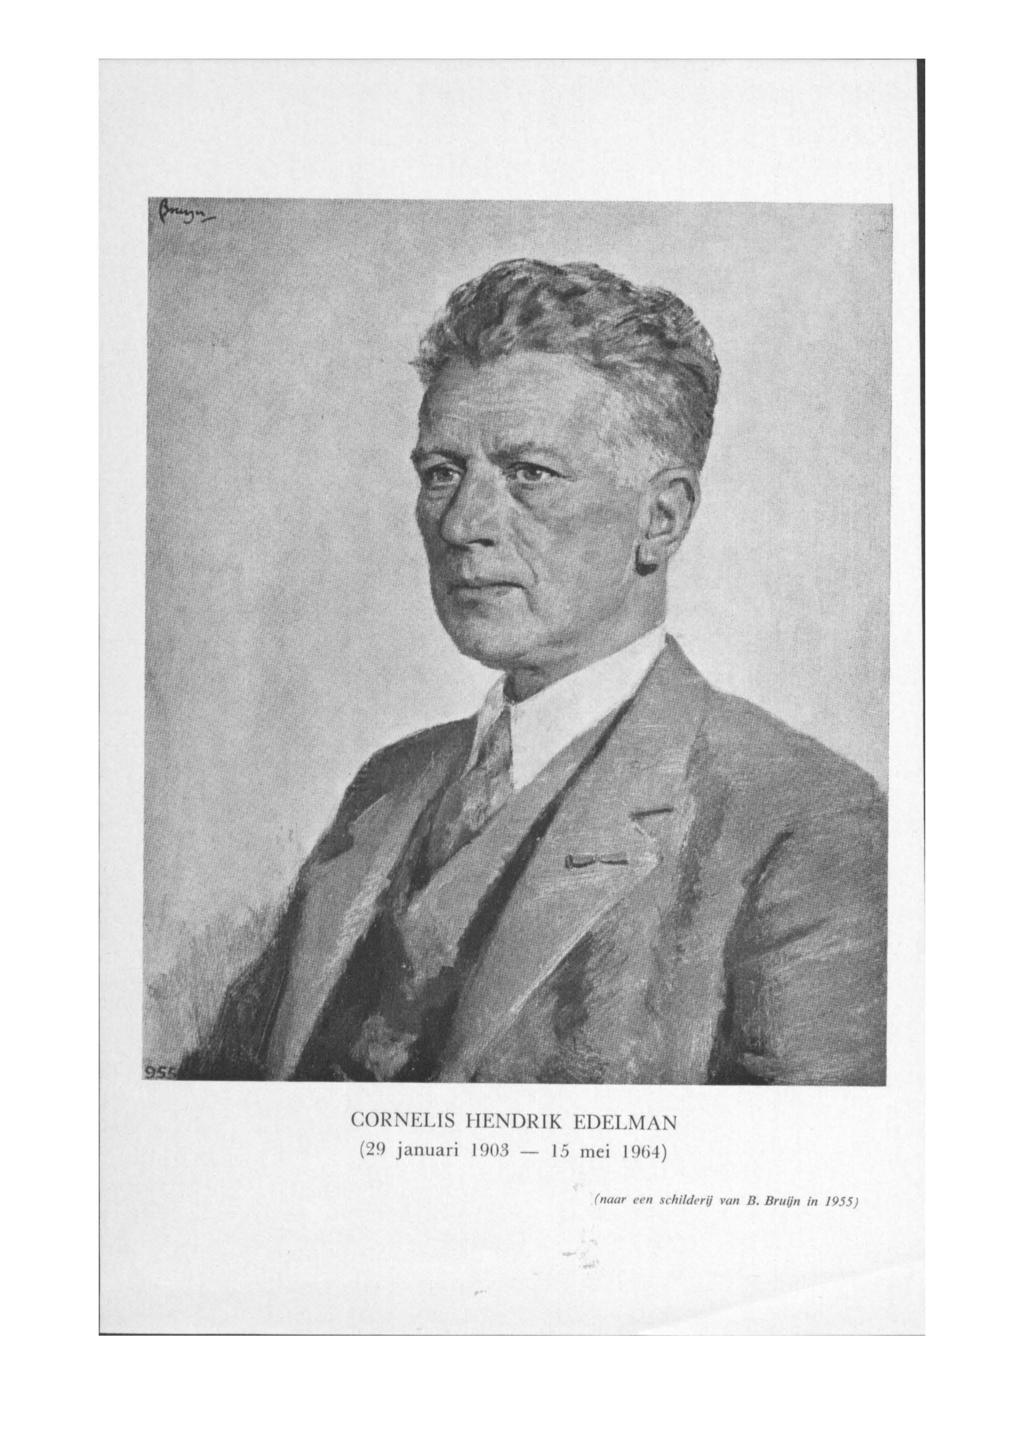 CORNELIS HENDRIK EDELMAN (29 januari 1903 - J 5 mei